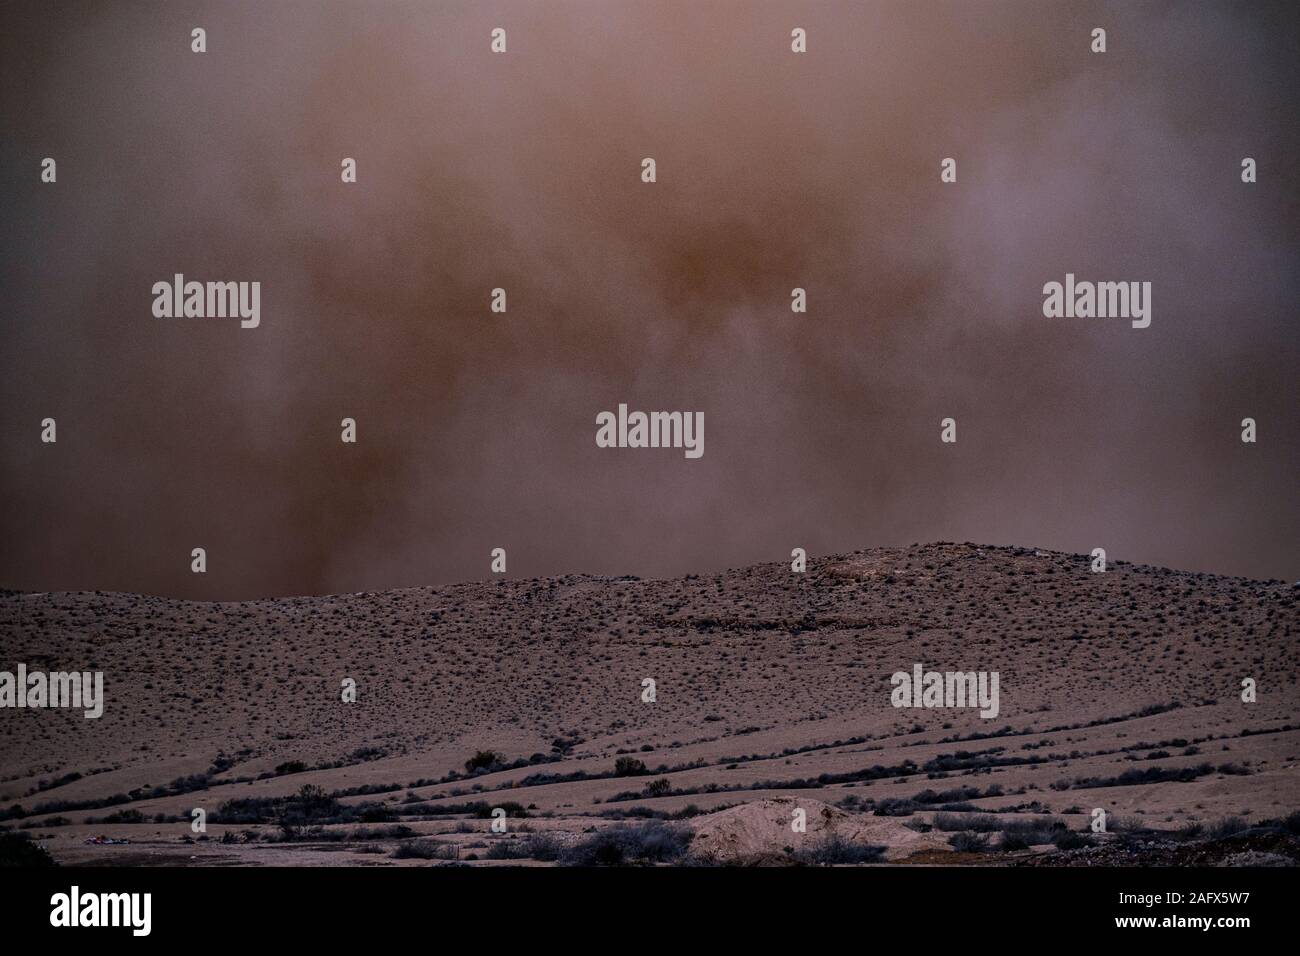 Sandsturm in der Negev Wüste, Israel. Stock Photo